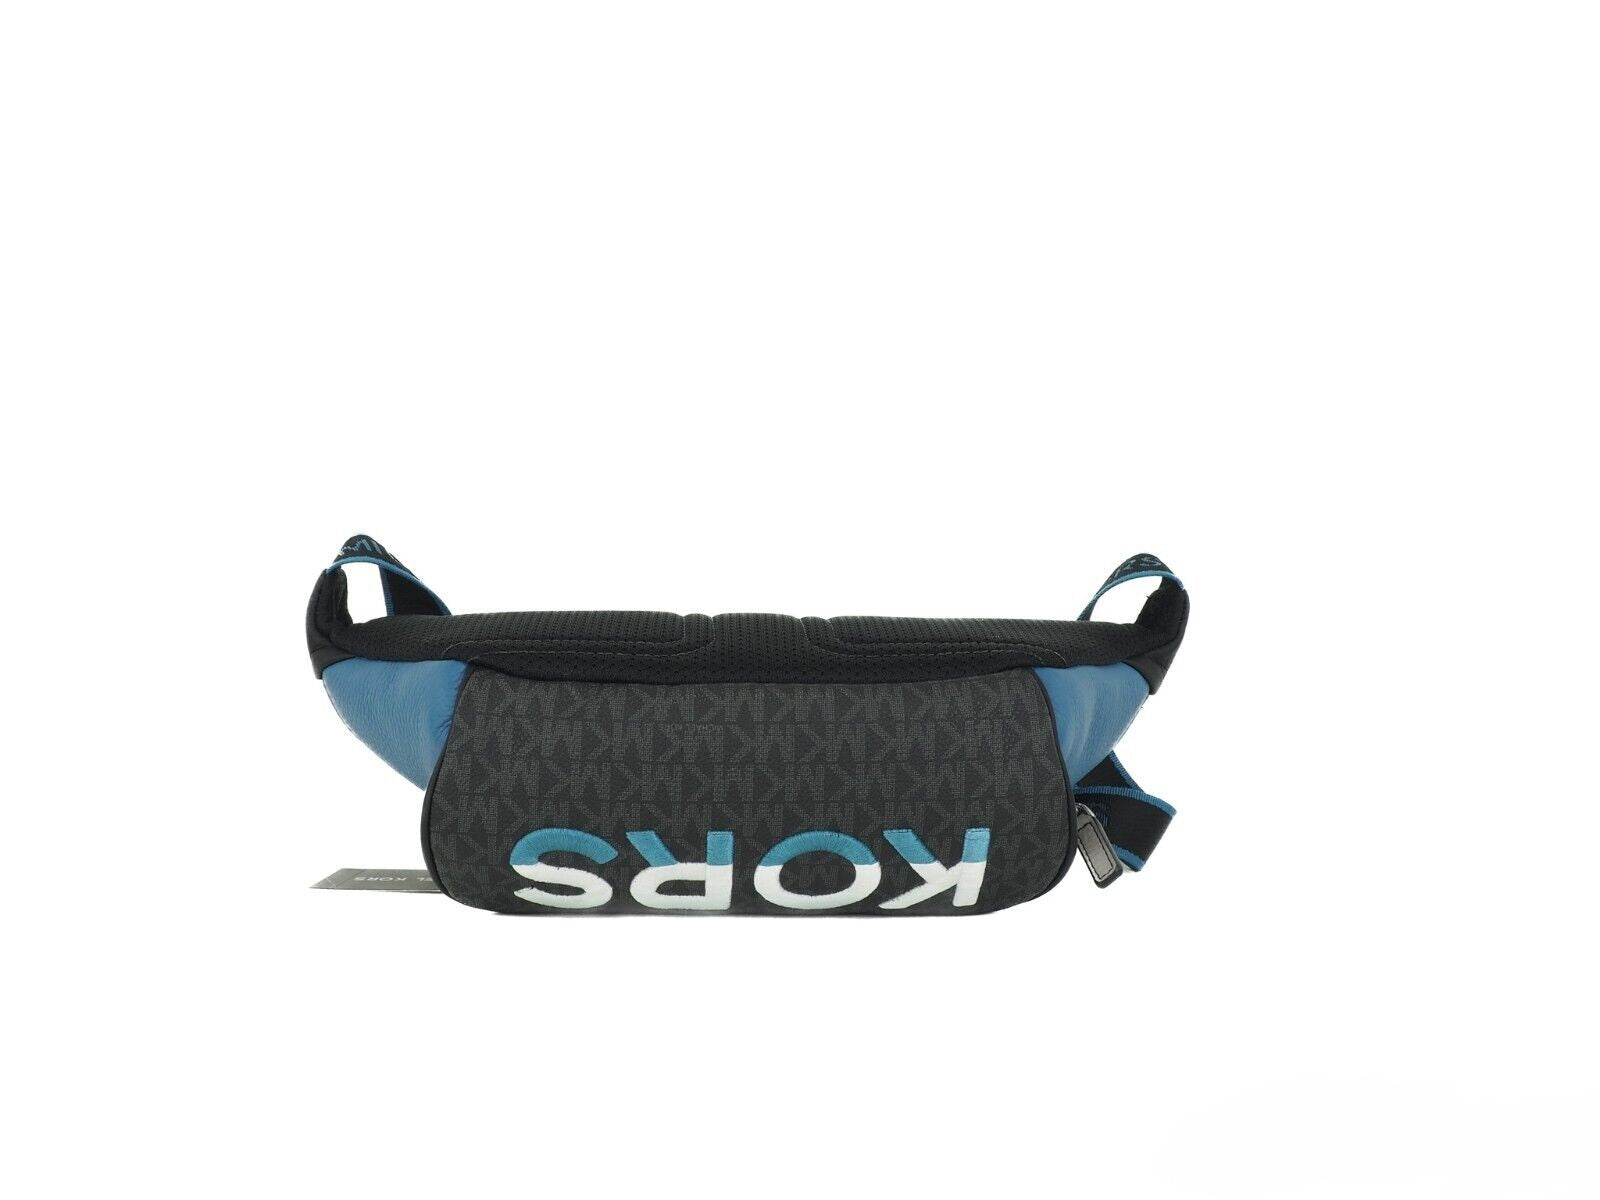 Cooper Large Blue Multi Leather Embroidered Logo Utility Belt Bag